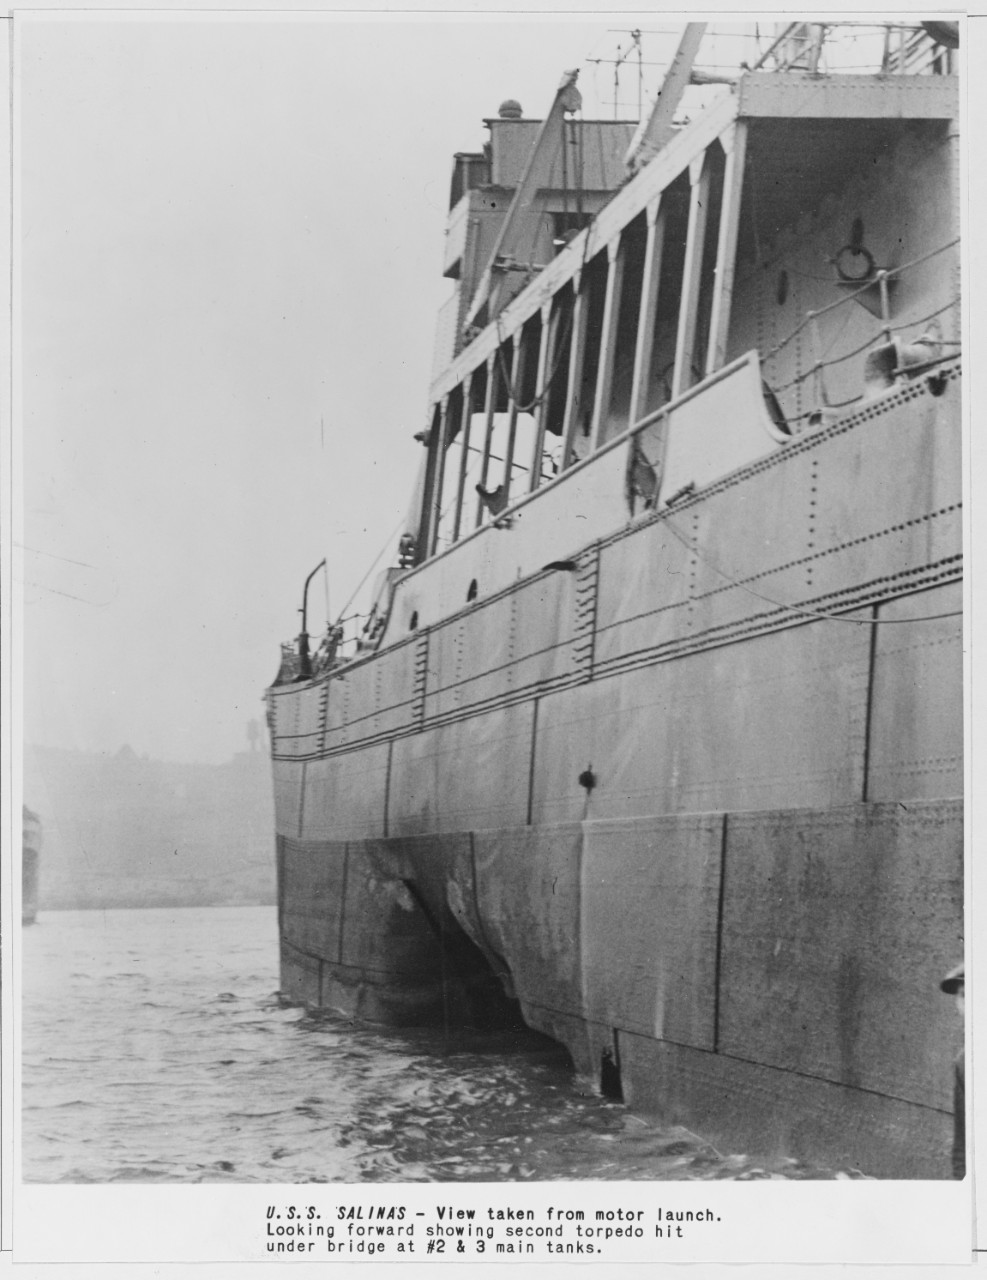 USS SALINAS (AO-19) (1921-1946)